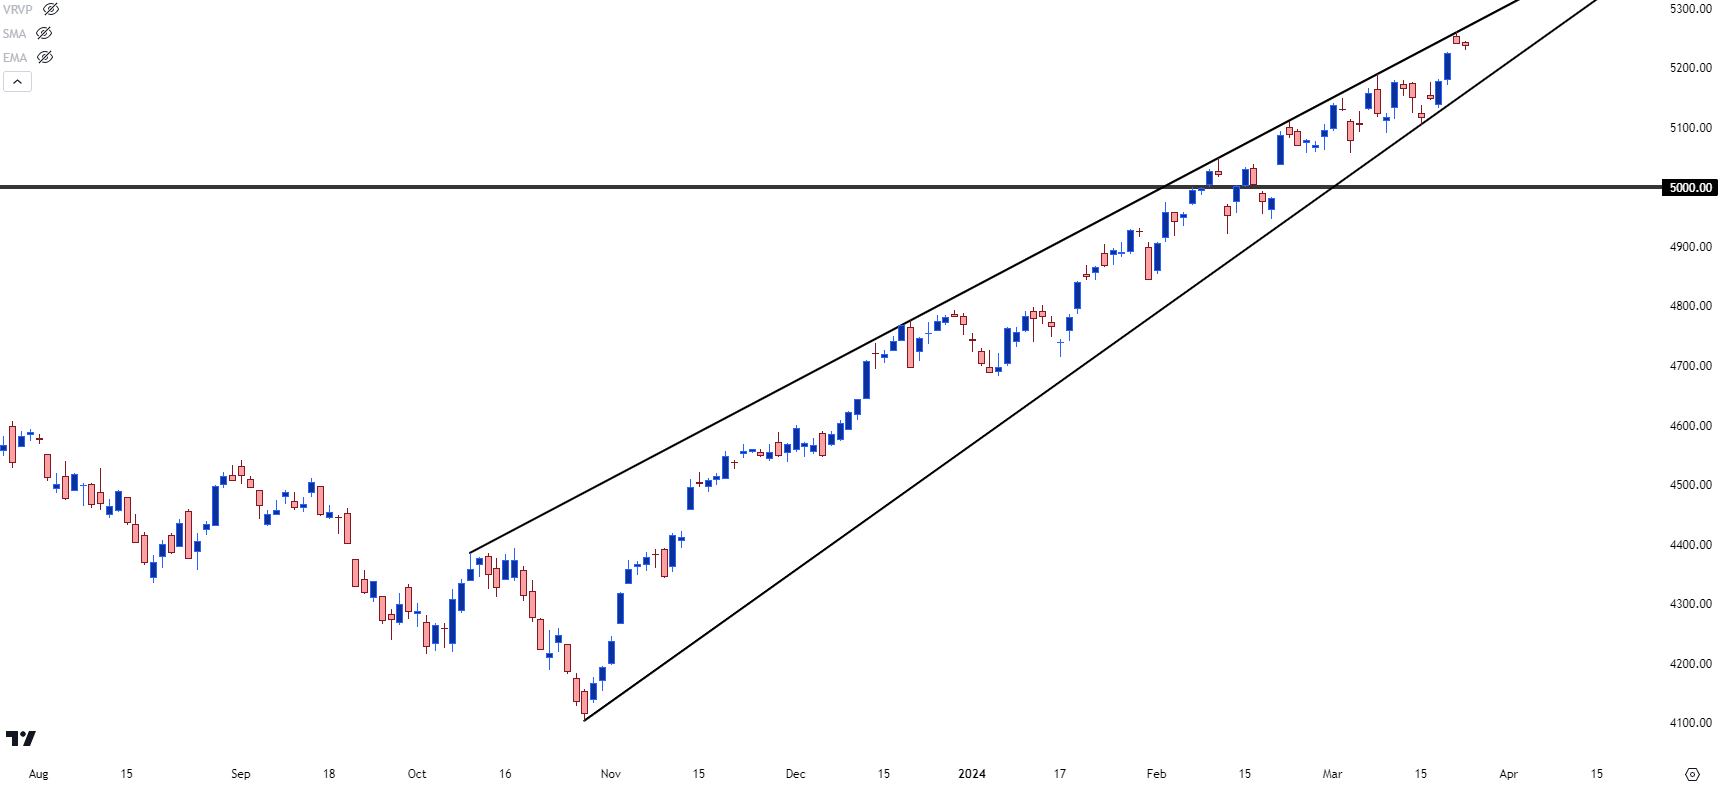 S&P 500 daily price chart